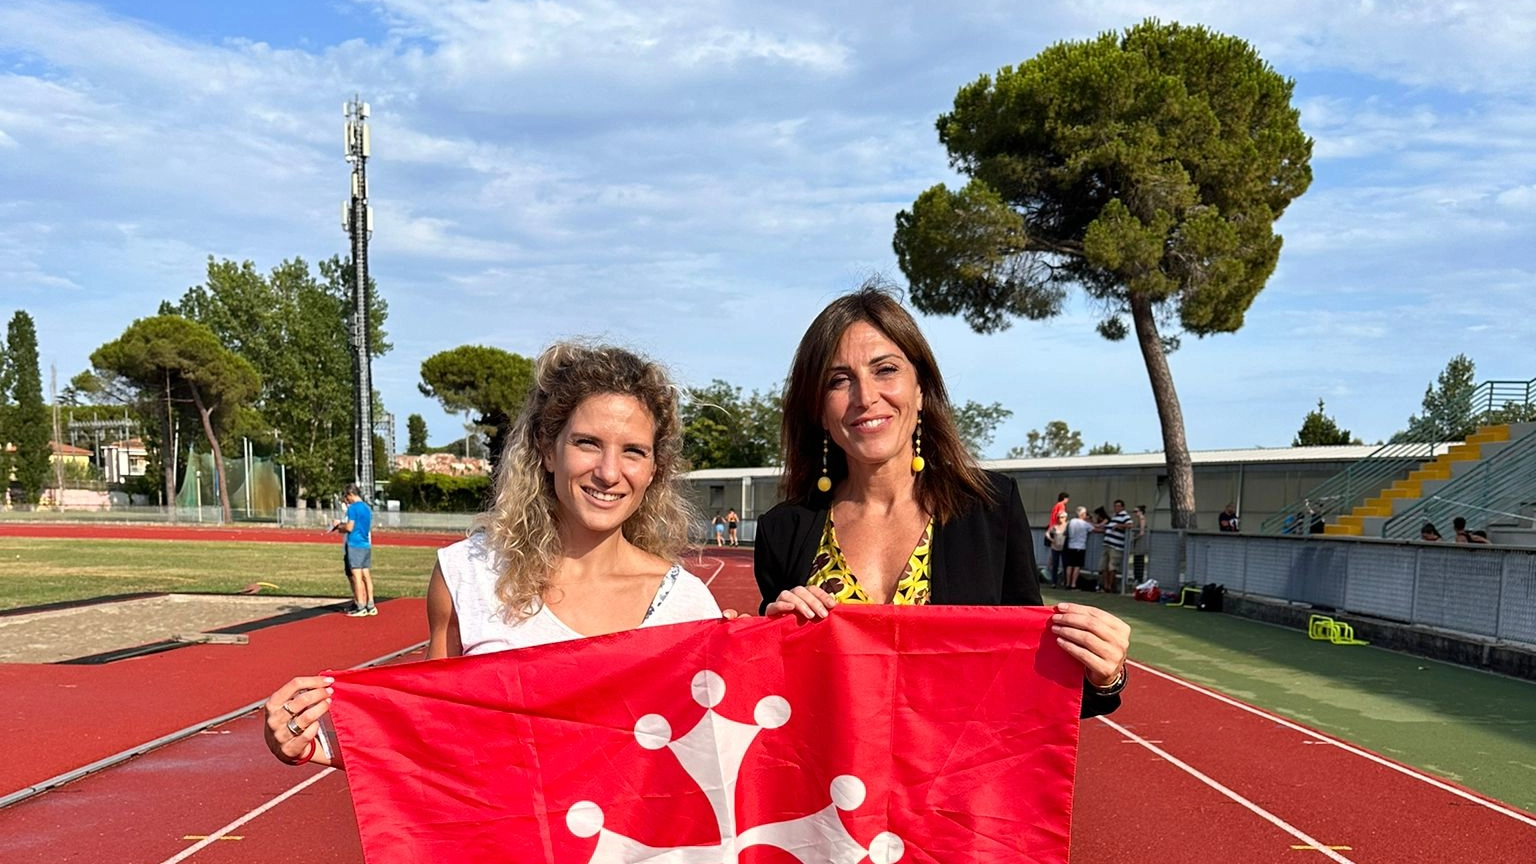 Anna Bongiorni, Dianele Meucci, Gabriele Cimini e Silvia Terrazzi hanno ricevuto la bandiera di Pisa dall’amministrazione comunale